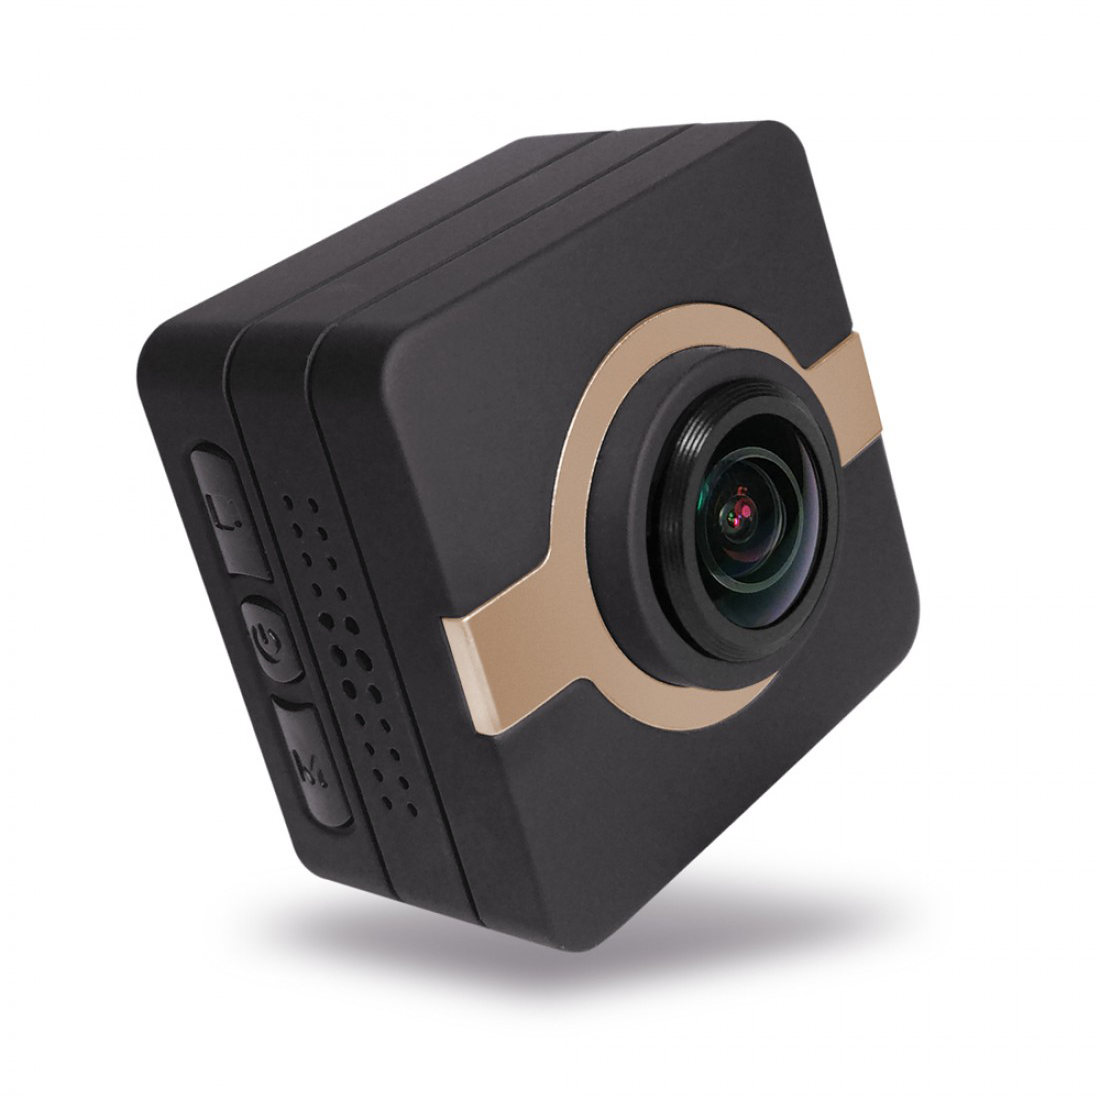 Matecam X1 Mini Action Camera Ταμπλό αυτοκινήτου Κάμερα Κάμερα εγγραφής κάμερας 4K-HI Ultra HD Αδιάβροχη βιντεοκάμερα DV 16MP ευρυγώνια 160 μοιρών WIFI/G-Αισθητήρας/Γυροσκοπική σταθεροποίηση/Ανίχνευση κίνησης/Τηλεχειριστήριο Mini DVR Κλειδιά αυτοκινήτου Micro RC κάμερα κράνος ποδηλάτου Camwn